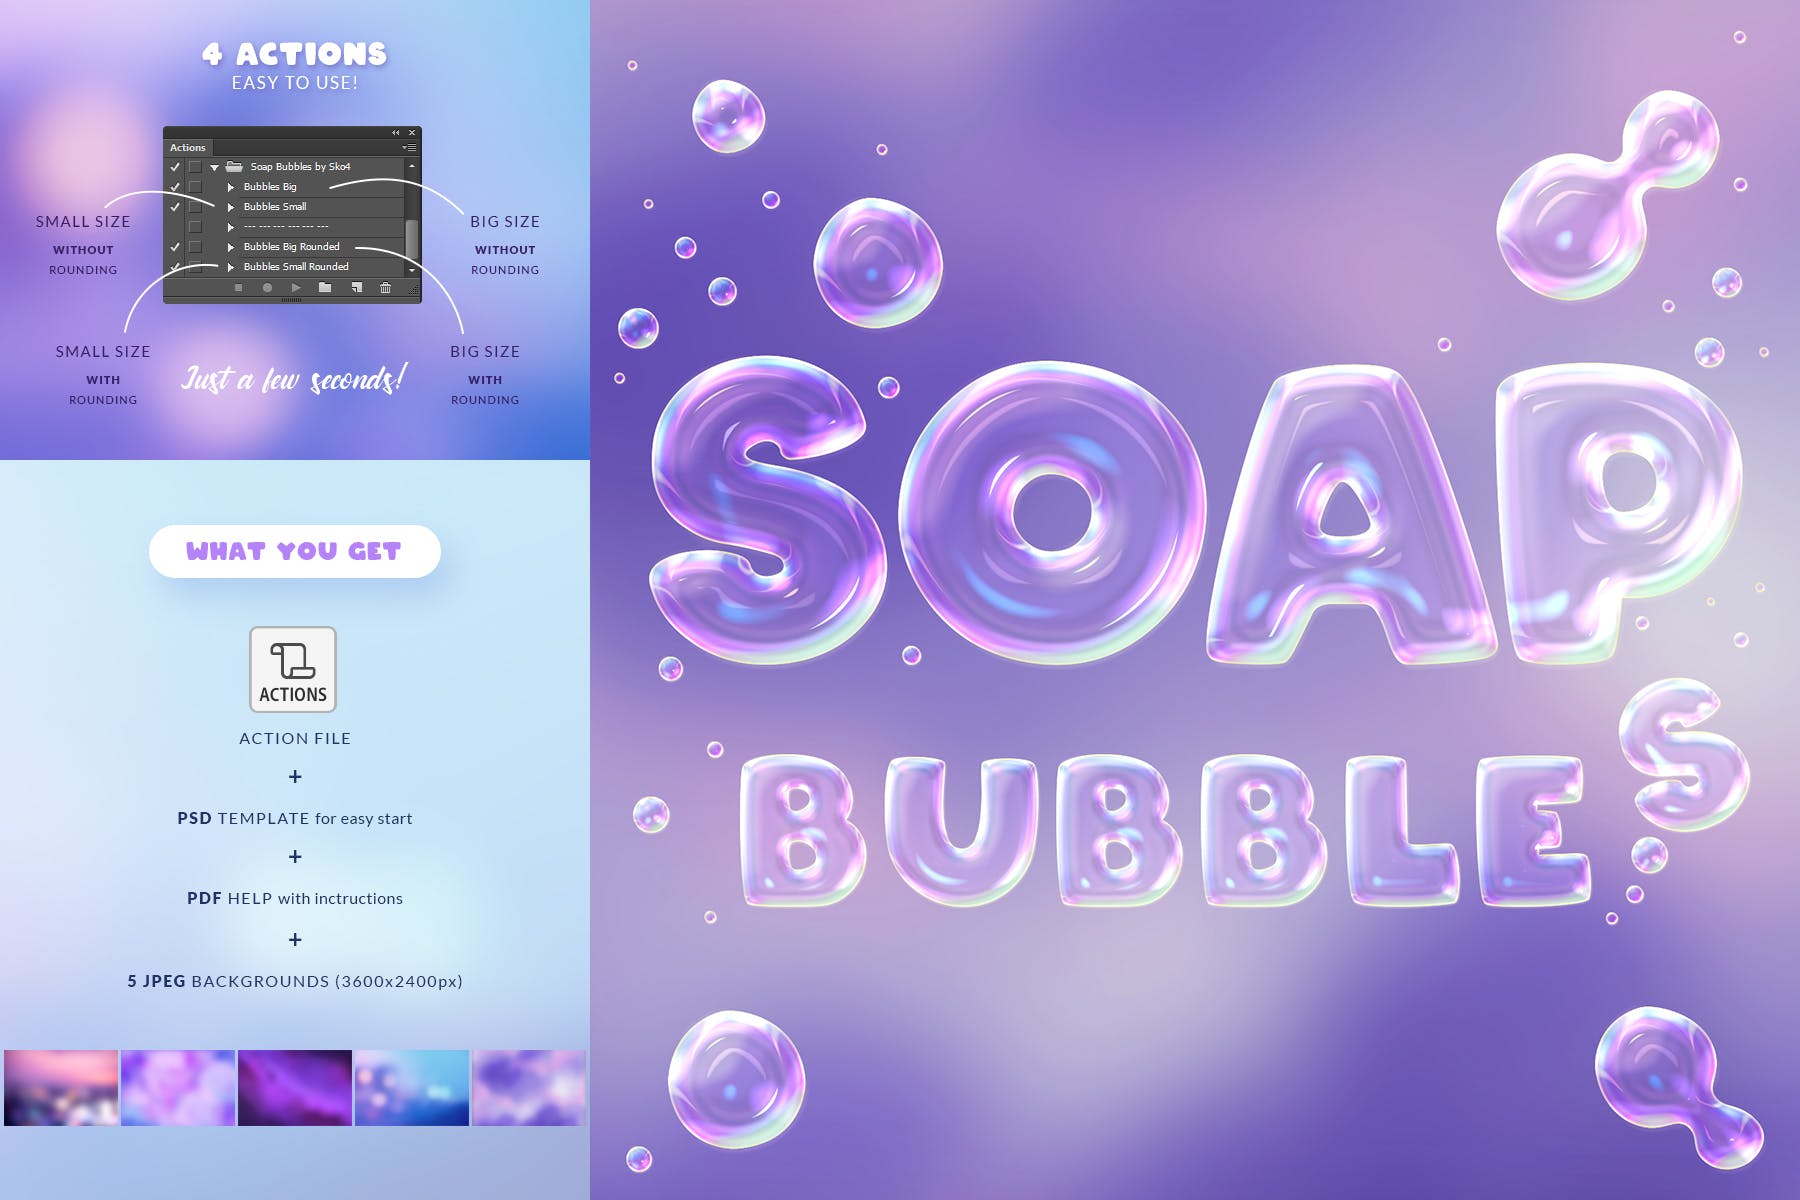 肥皂泡文字特效第一素材精选PS动作 Soap Bubbles Photoshop Action插图(2)